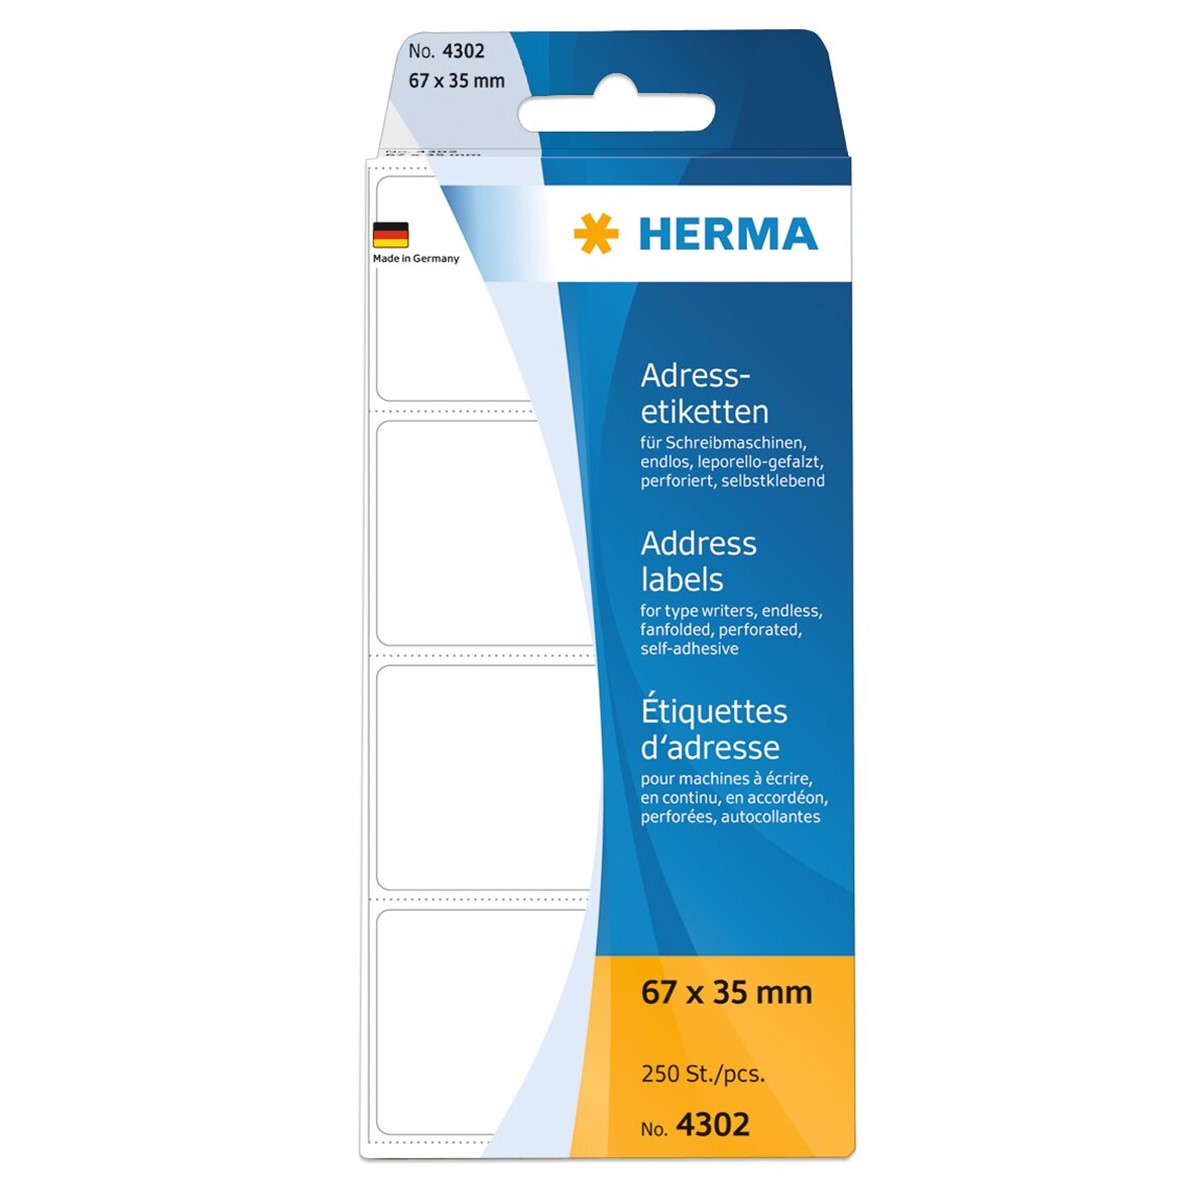 Herma - Adreßetiketten leporello 67 x 35 mm - permanent haftend - weiß - 250 Stück